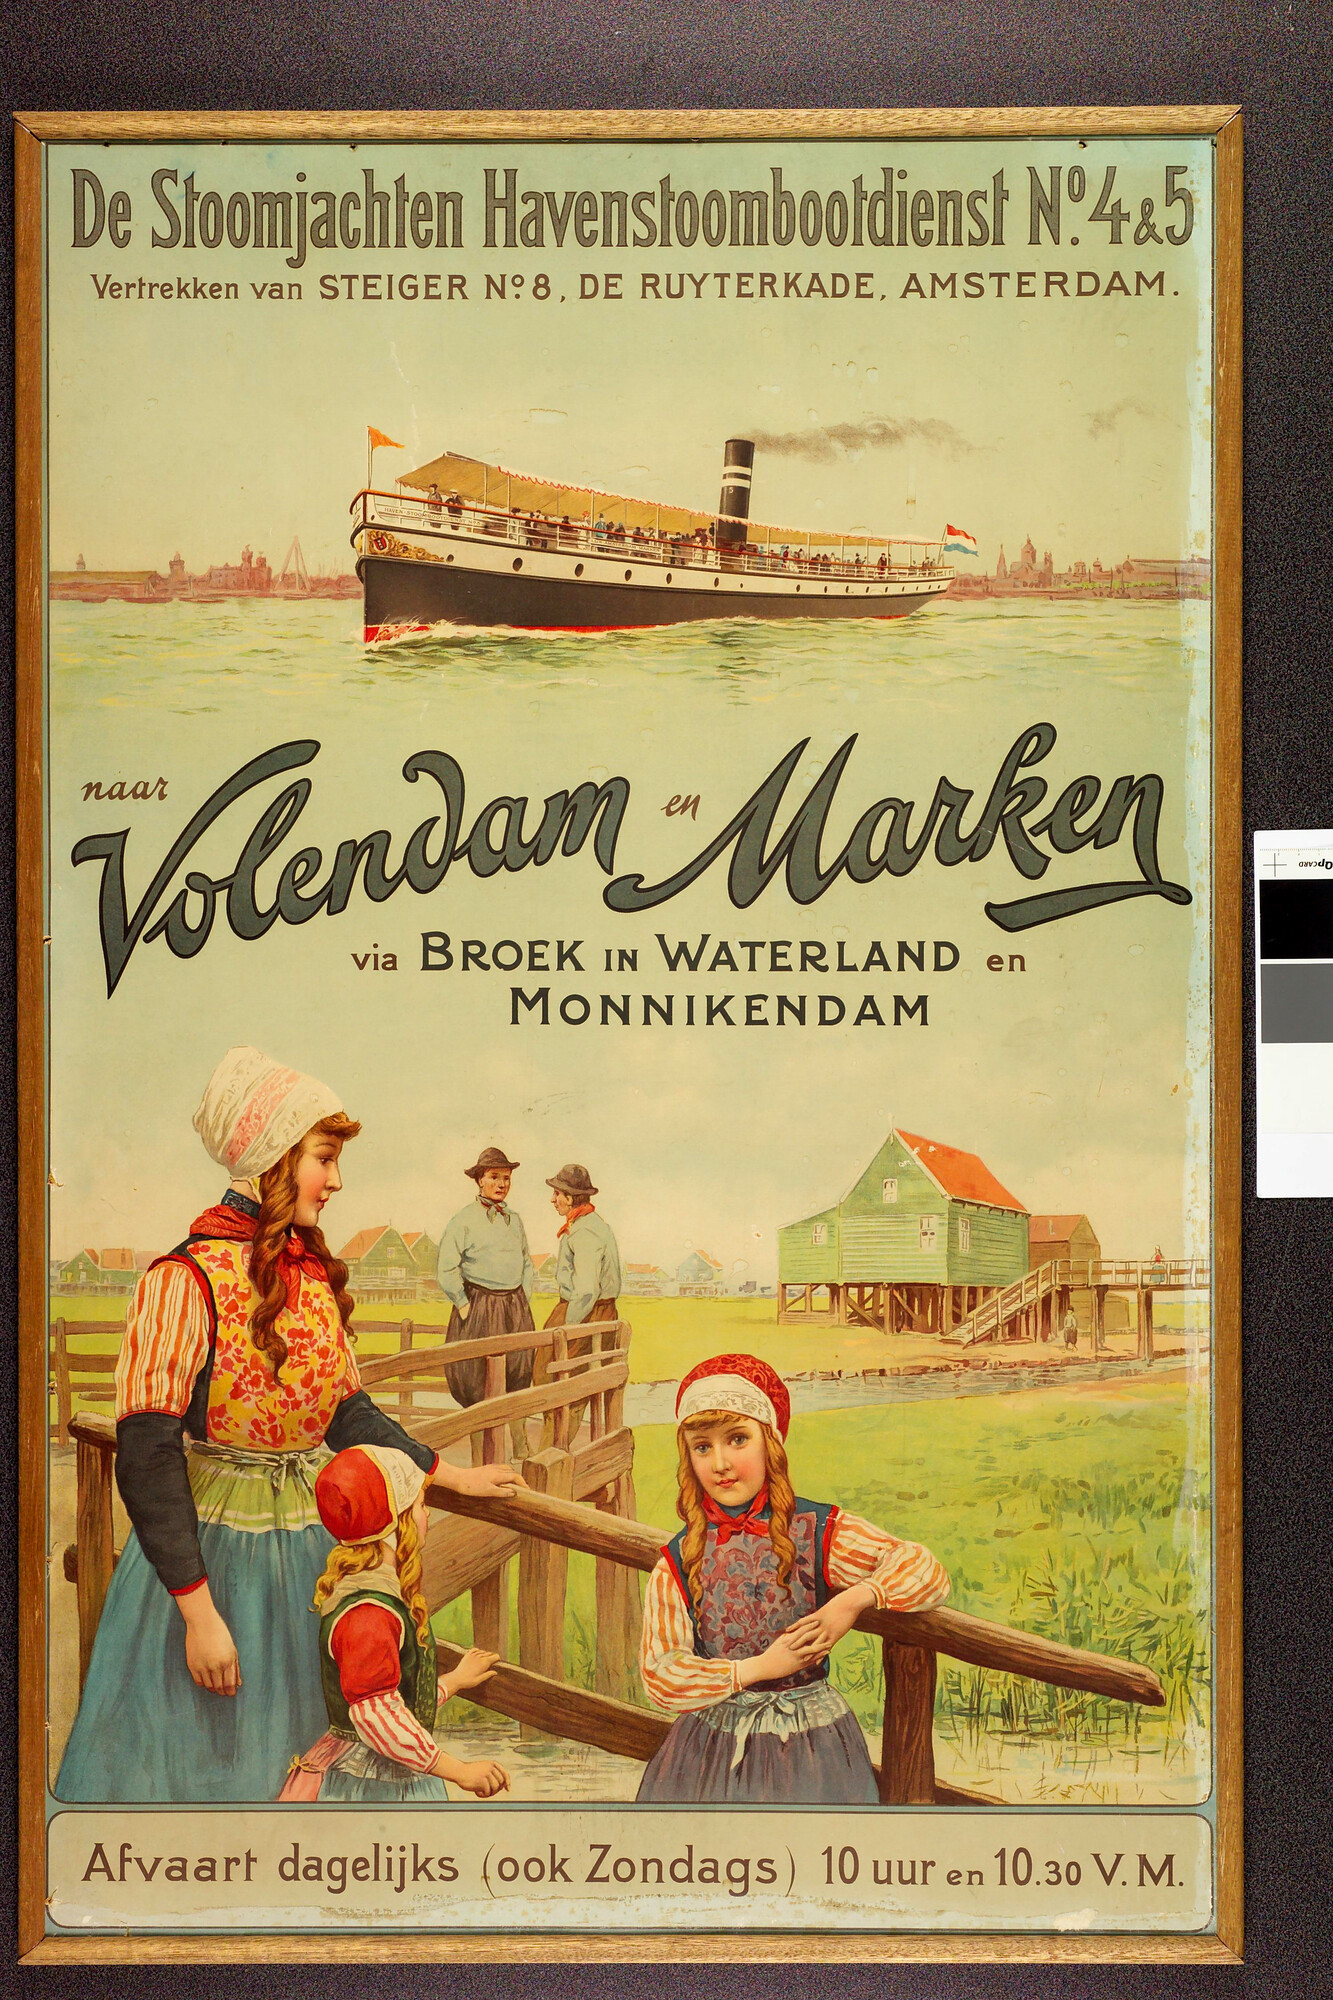 1989.1086; Affiche Naar Volendam en Marken; affiche